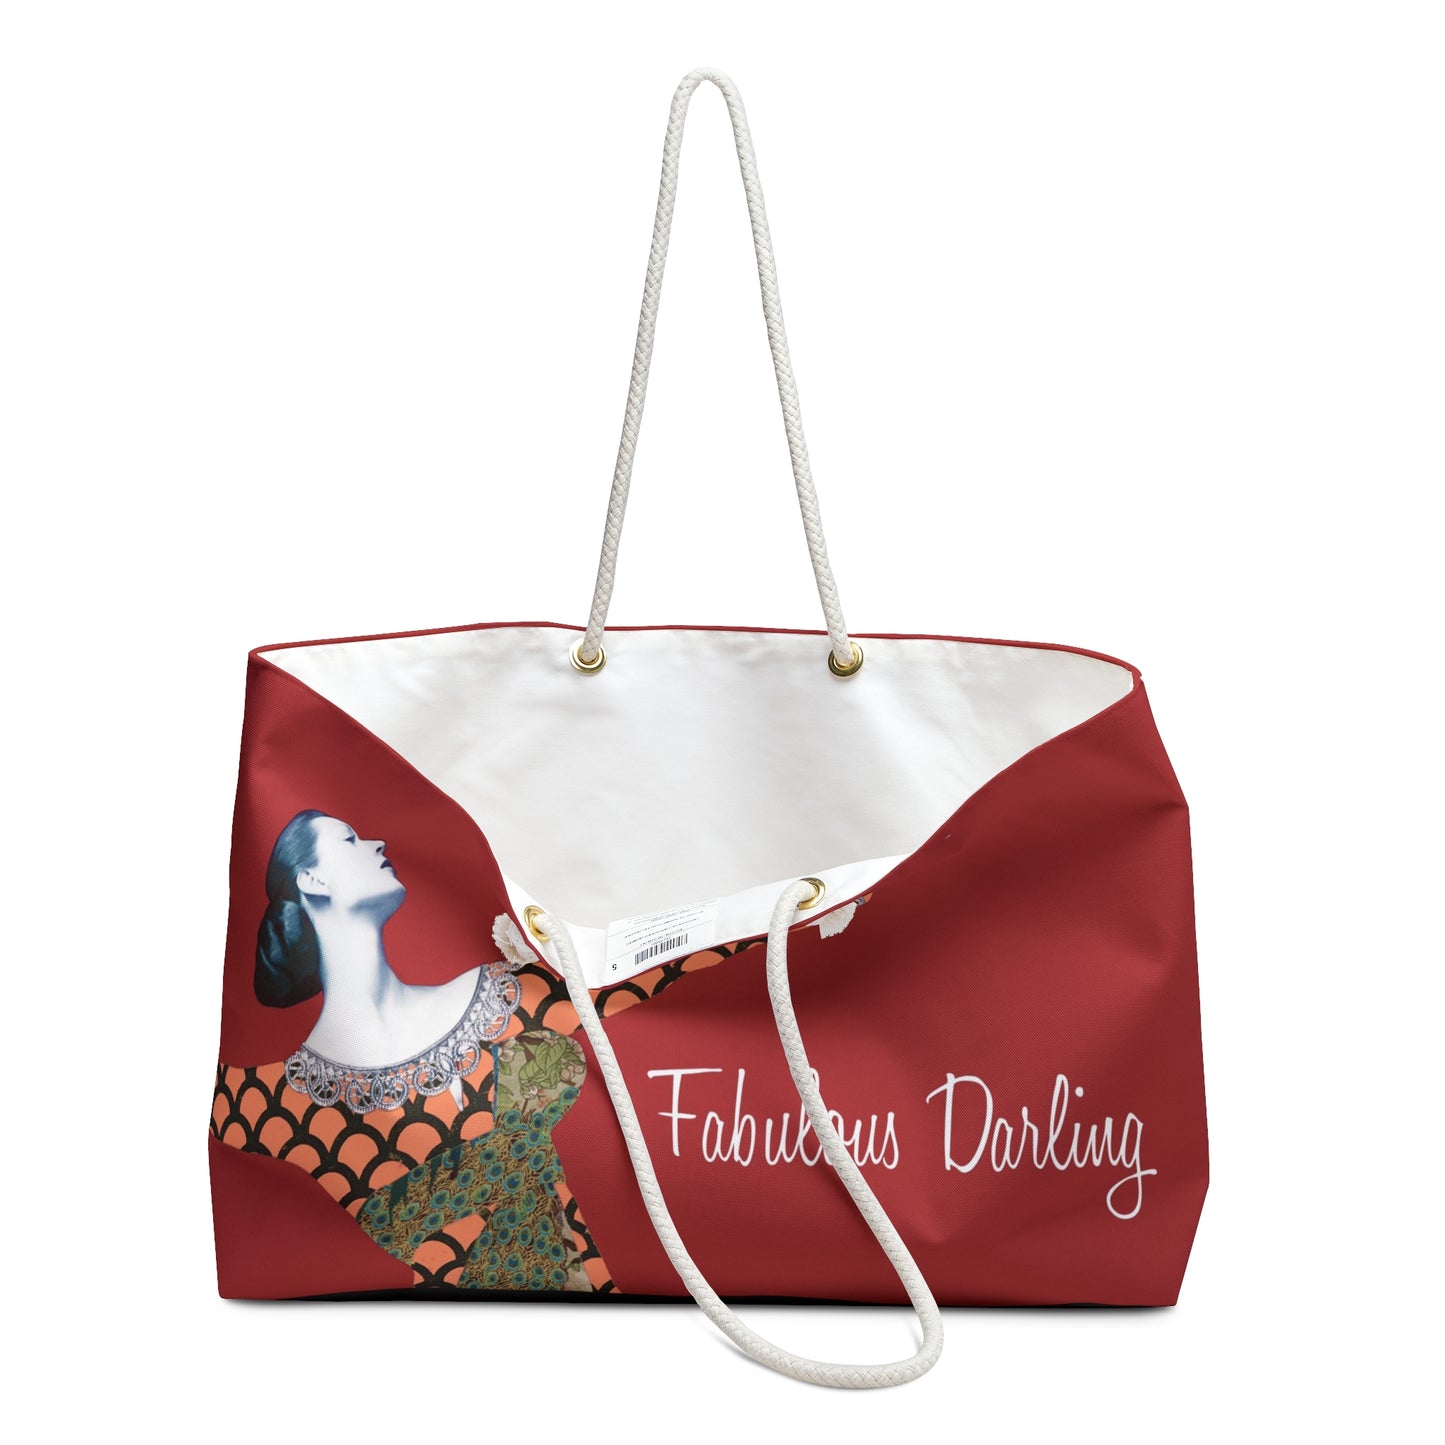 New! Weekender Bag - Fabulous Darling